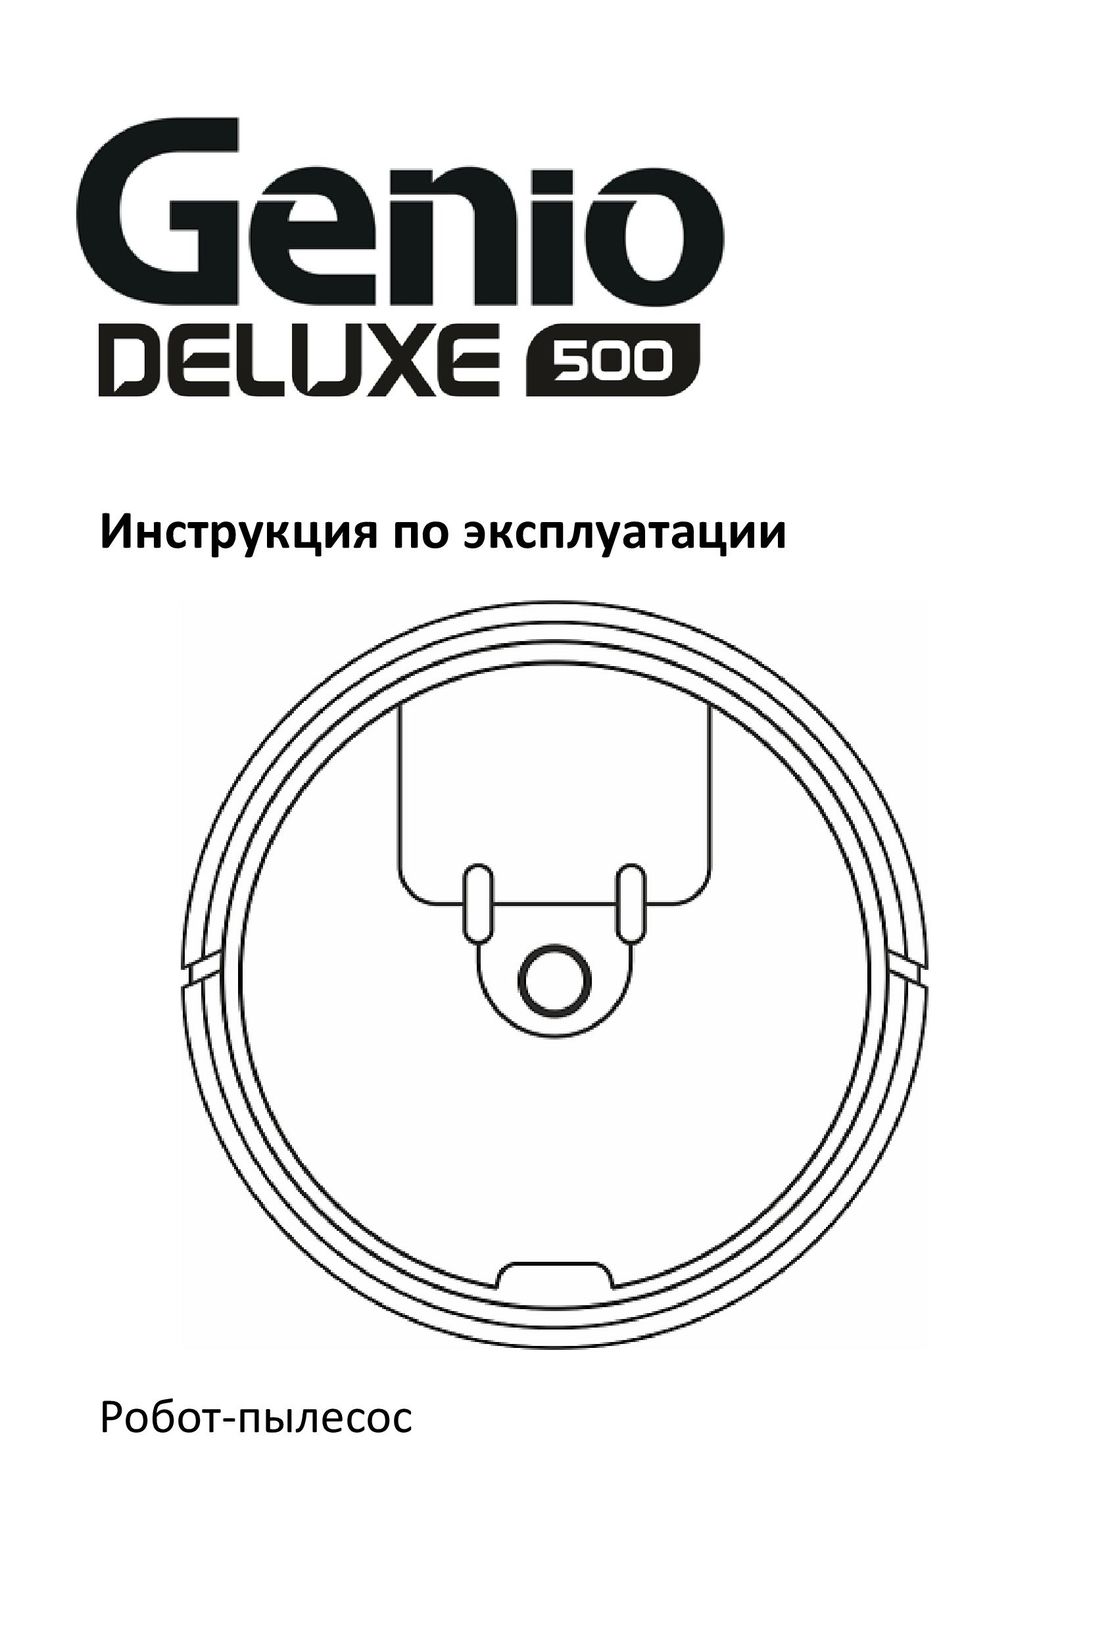 Genio Deluxe 500 инструкция на русском